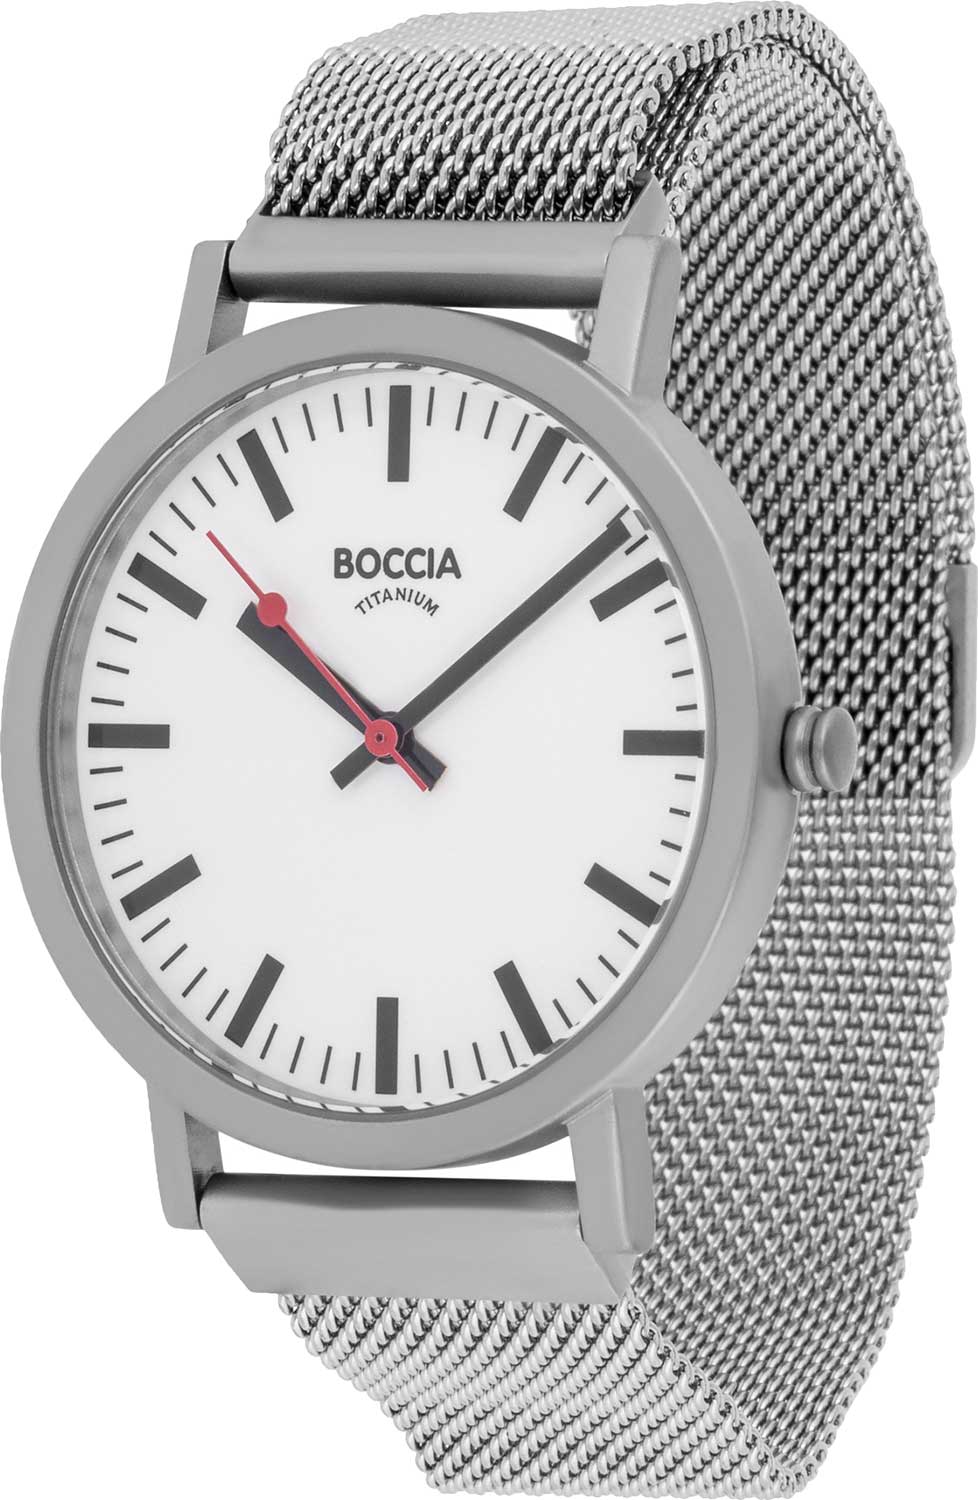 Титановые наручные часы Boccia Titanium 3651-06